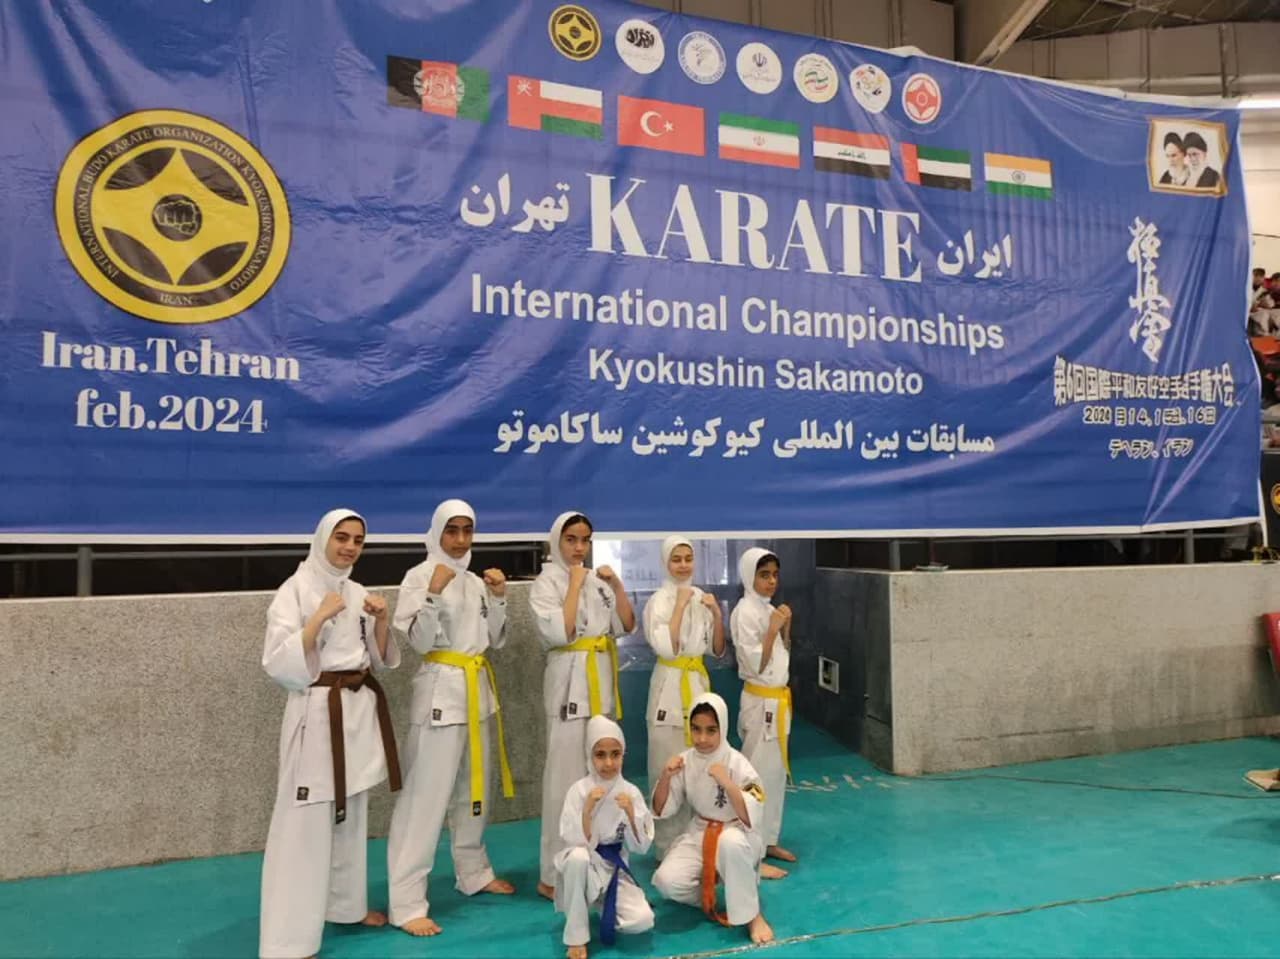 رقابت کاراته کاهای استان در مسابقات بین المللی کیوکوشین ساکاموتو جام صلح و دوستی